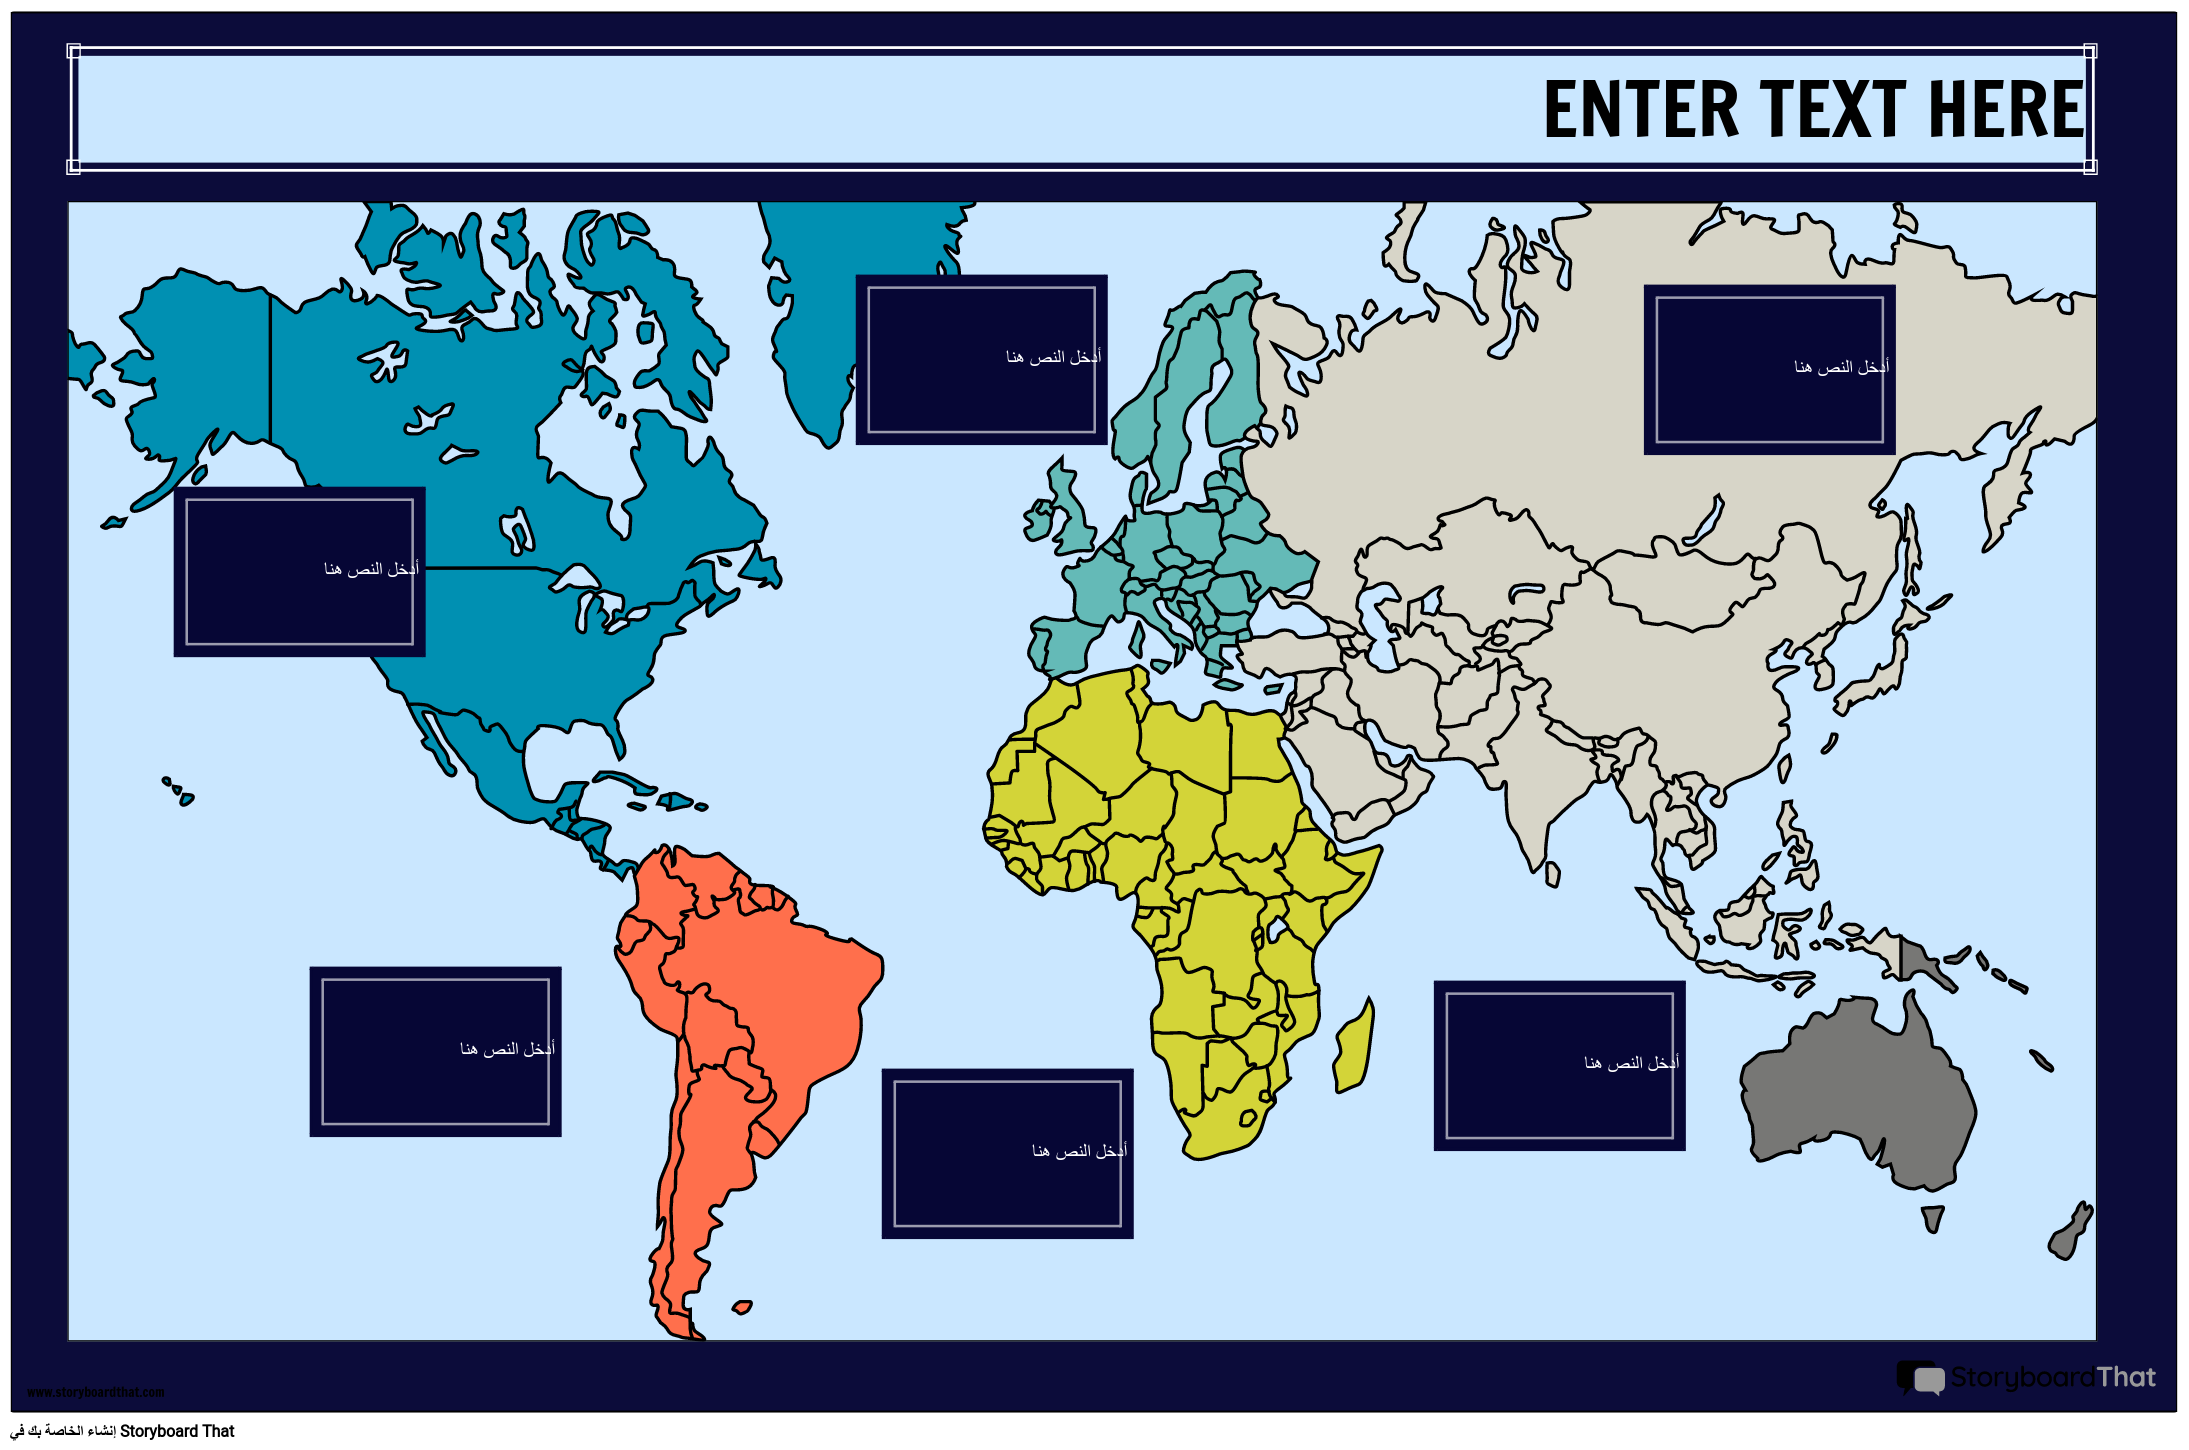 مخطط معلومات خريطة العالم